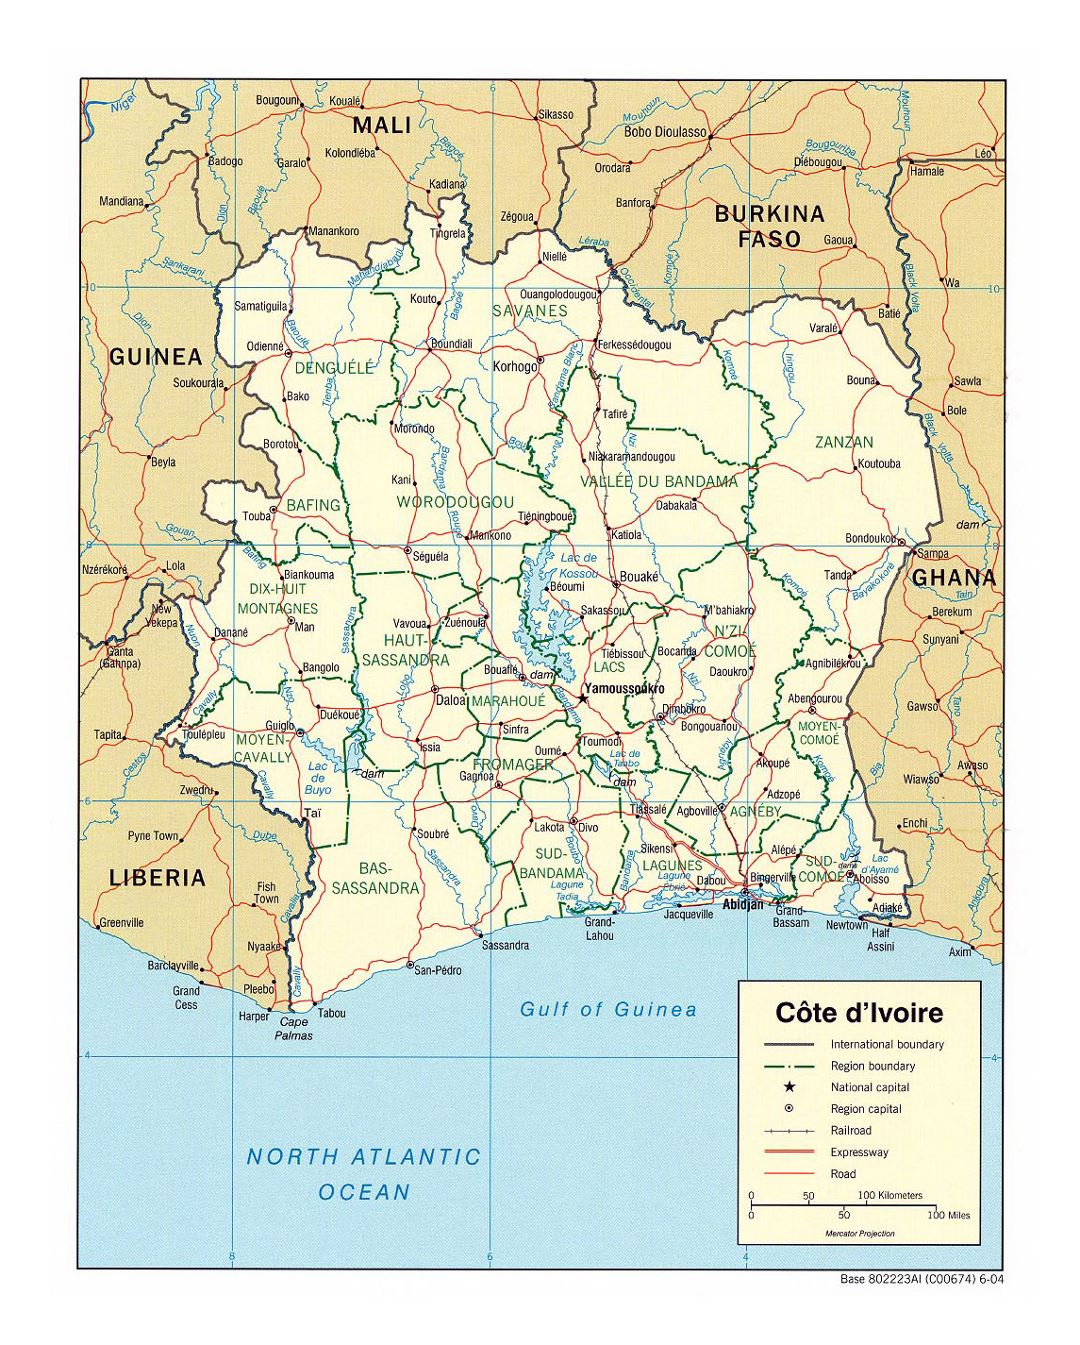 Детальная политическая и административная карта Кот-д'Ивуара с дорогами, железными дорогами и крупными городами - 2004